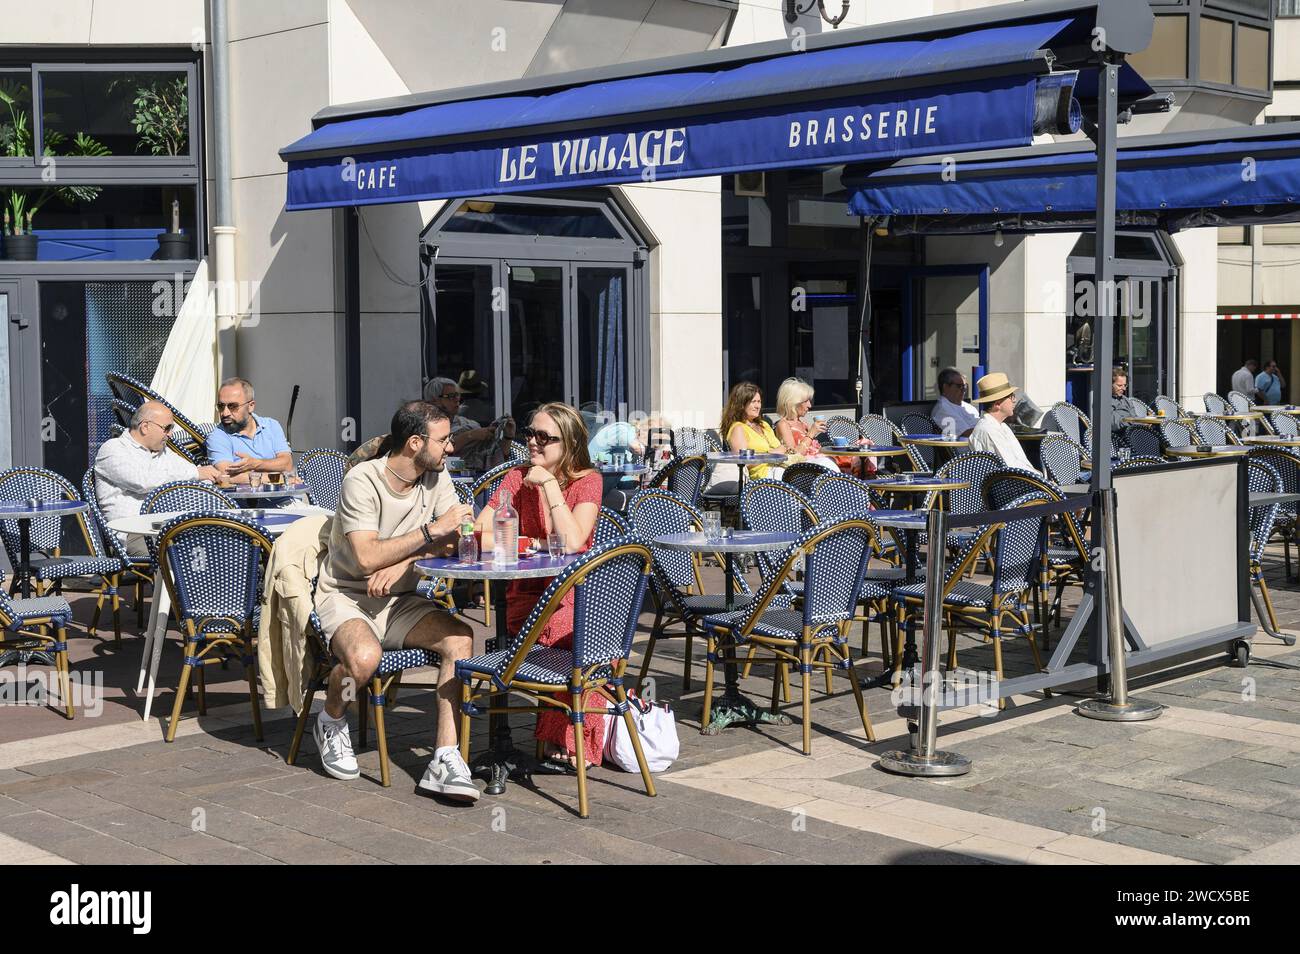 France, Val d'Oise, Enghien-les-bains, quartier commerçant rue Robert Shuman, terrasse du bar le Village Banque D'Images